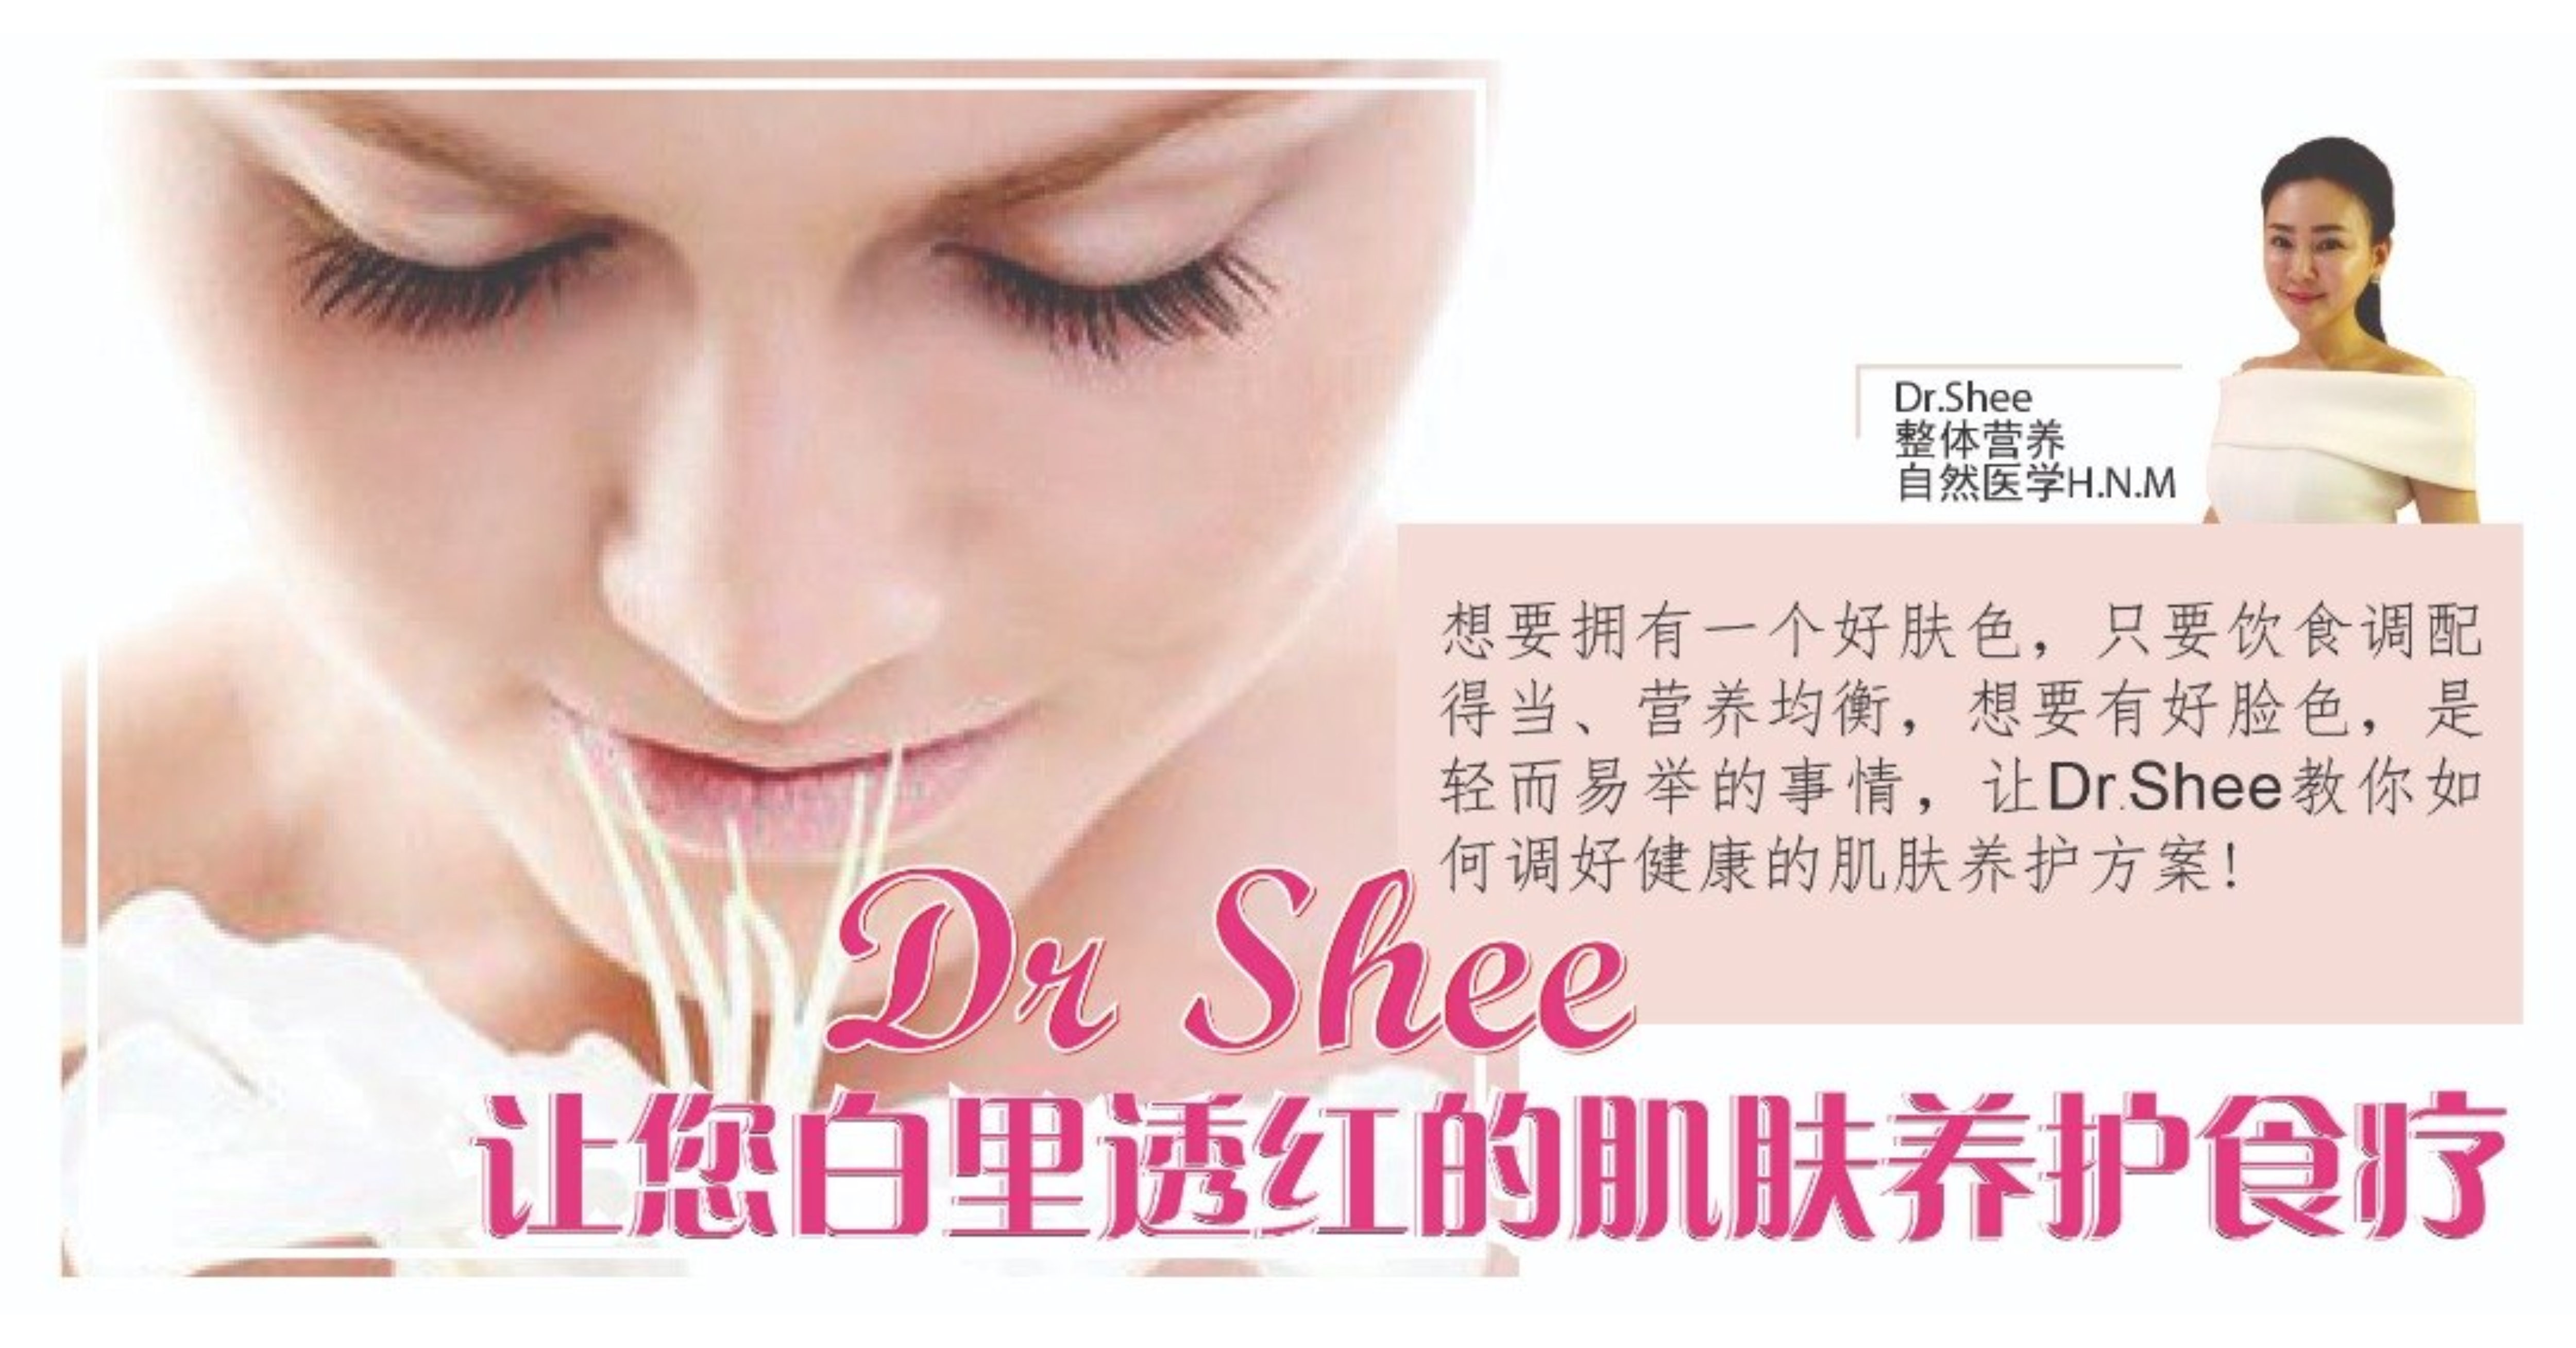 Dr Shee 让您白里透红的肌肤养护食疗 肌肤好气色的关键要素 如何摄取营养均衡 改善脸色的生机饮食 A01